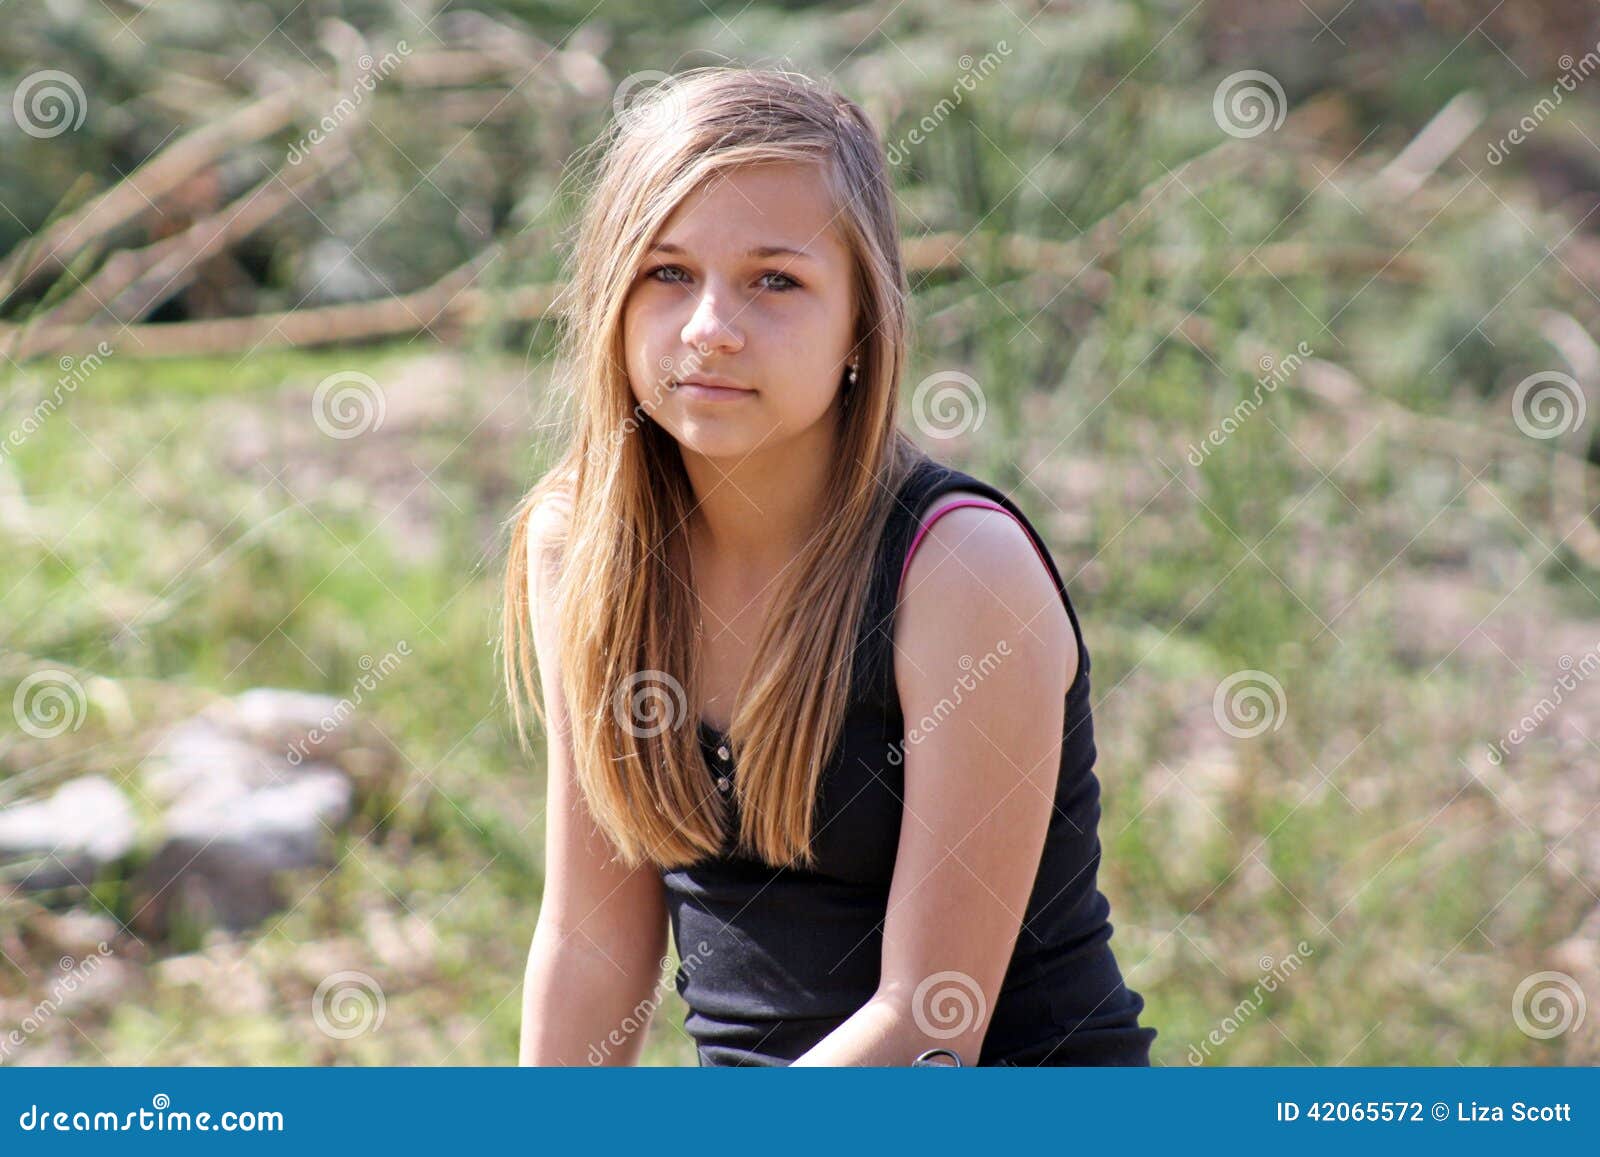 Teenage girl stock photo. Image of beauty, isolated, playing - 42065572